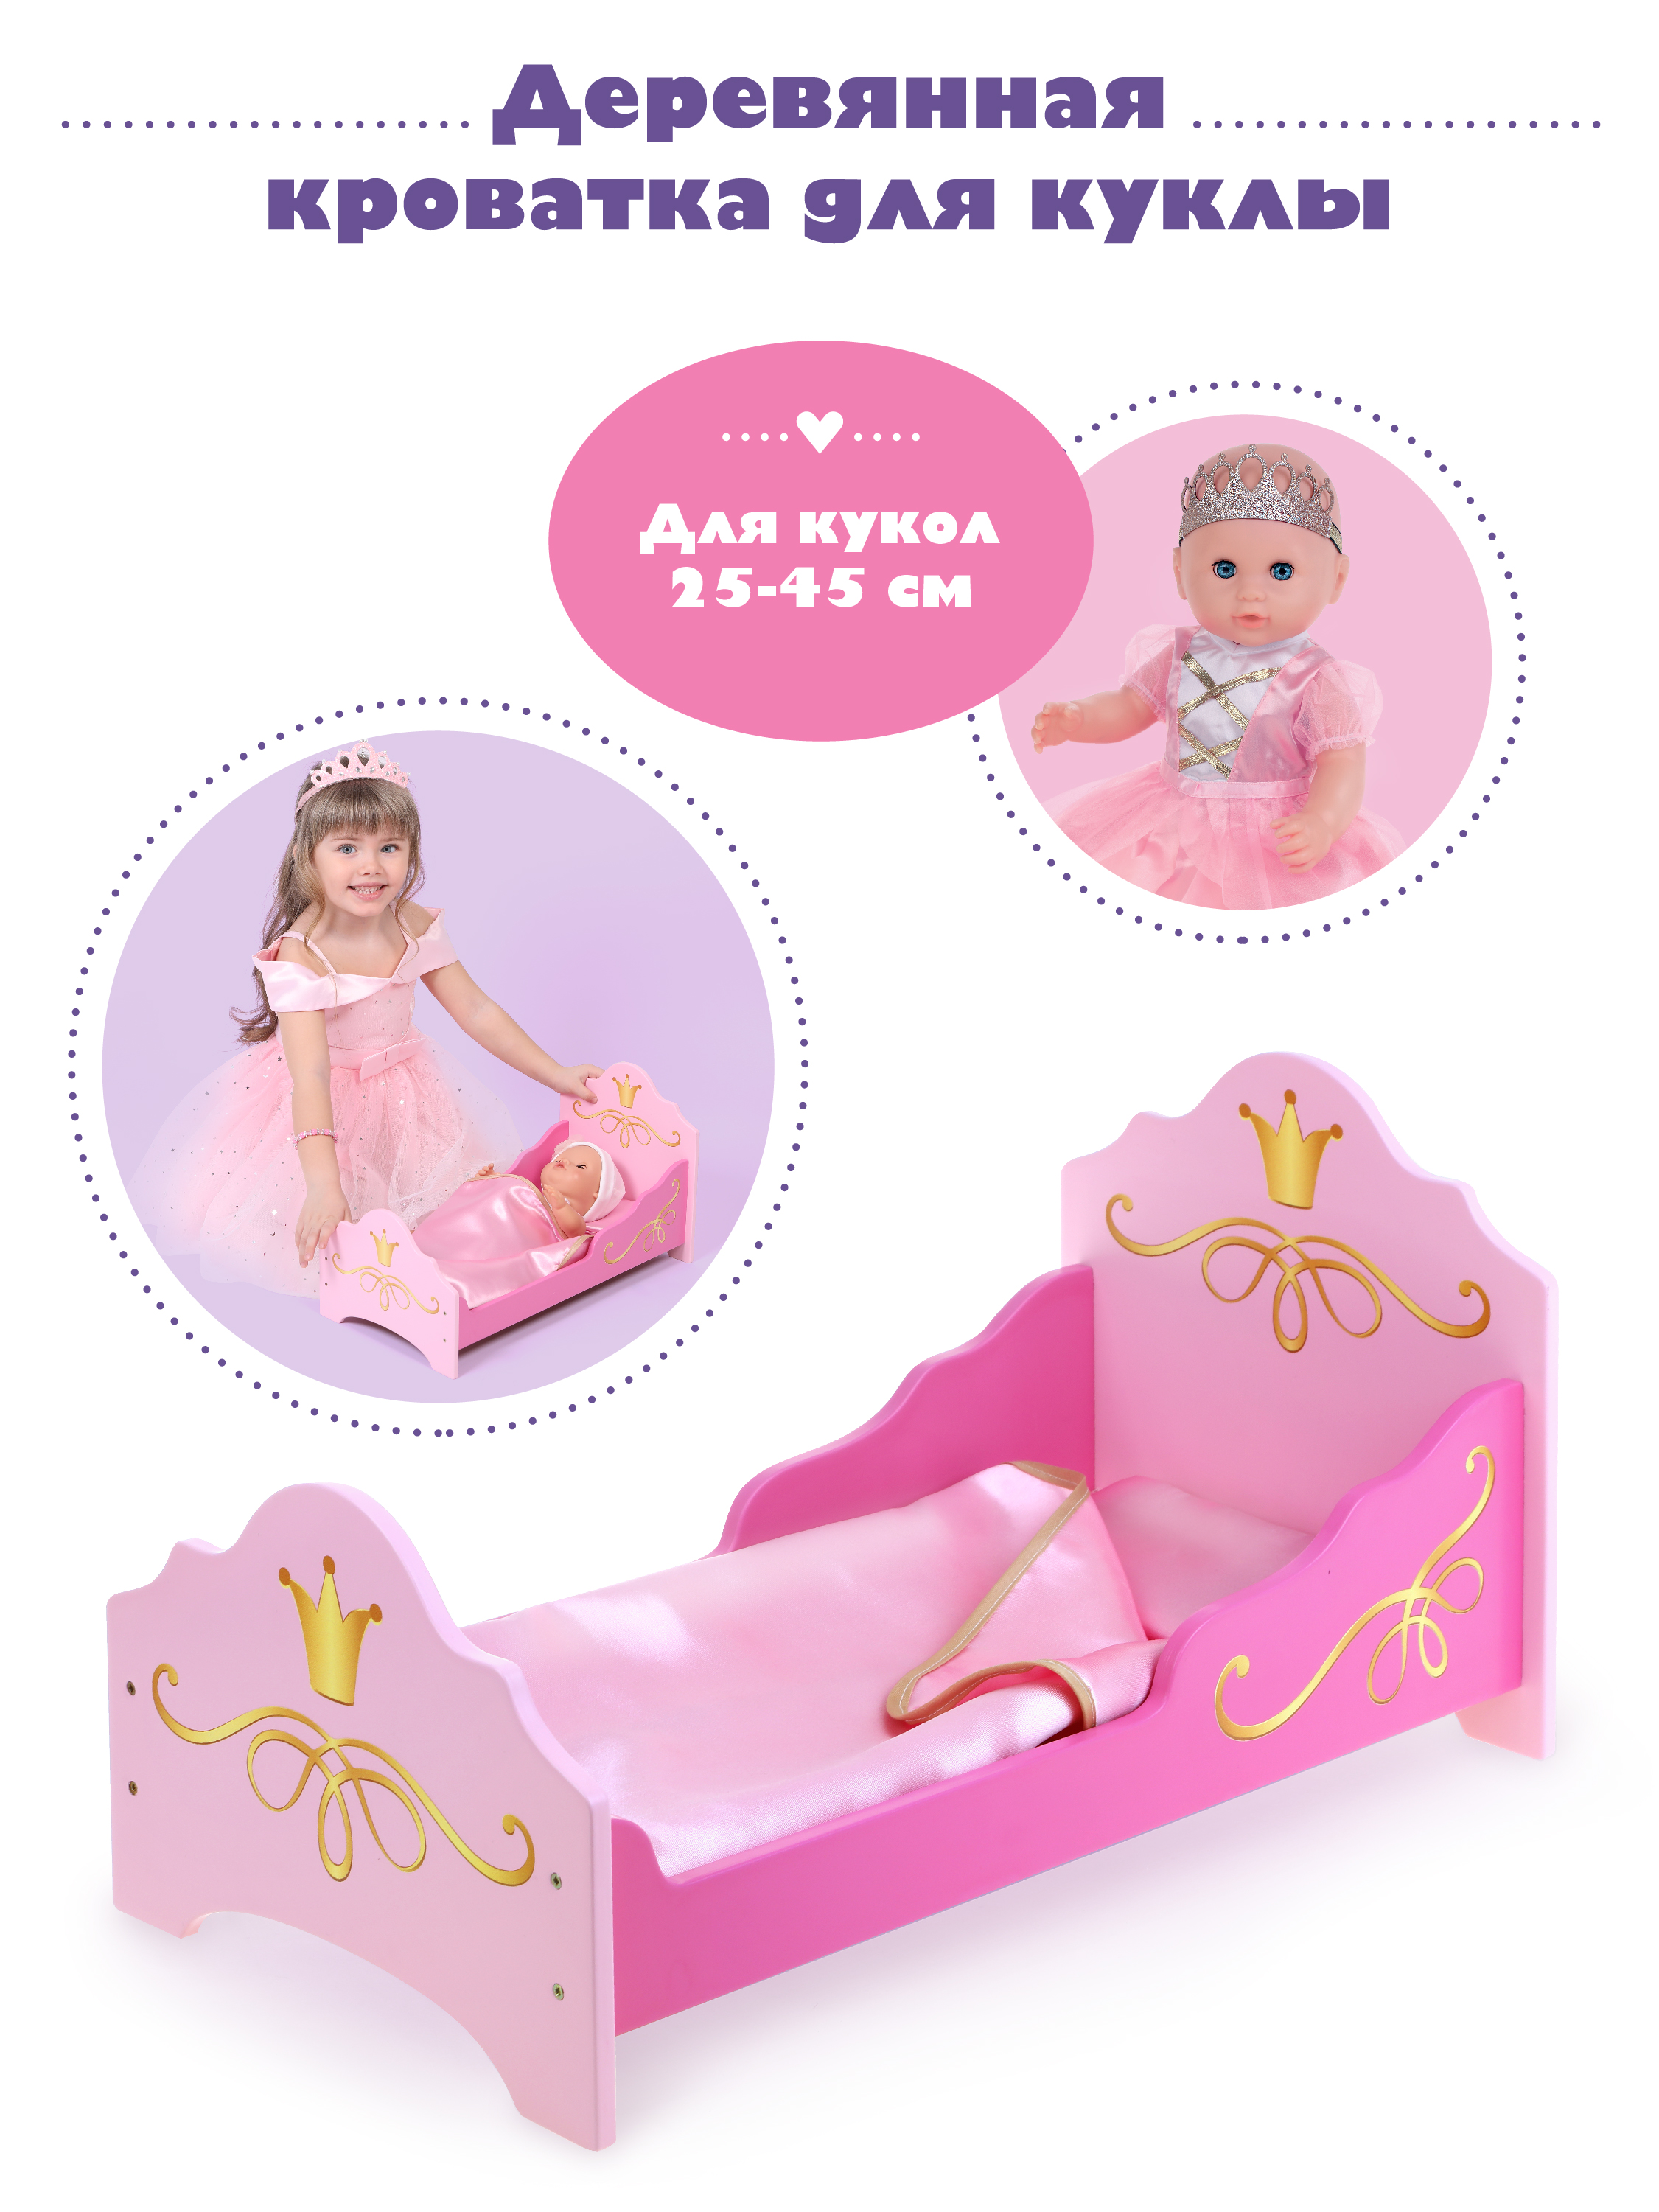 Кроватка для куклы Mary Poppins Принцесса 67398 кроватка для куклы mary poppins принцесса